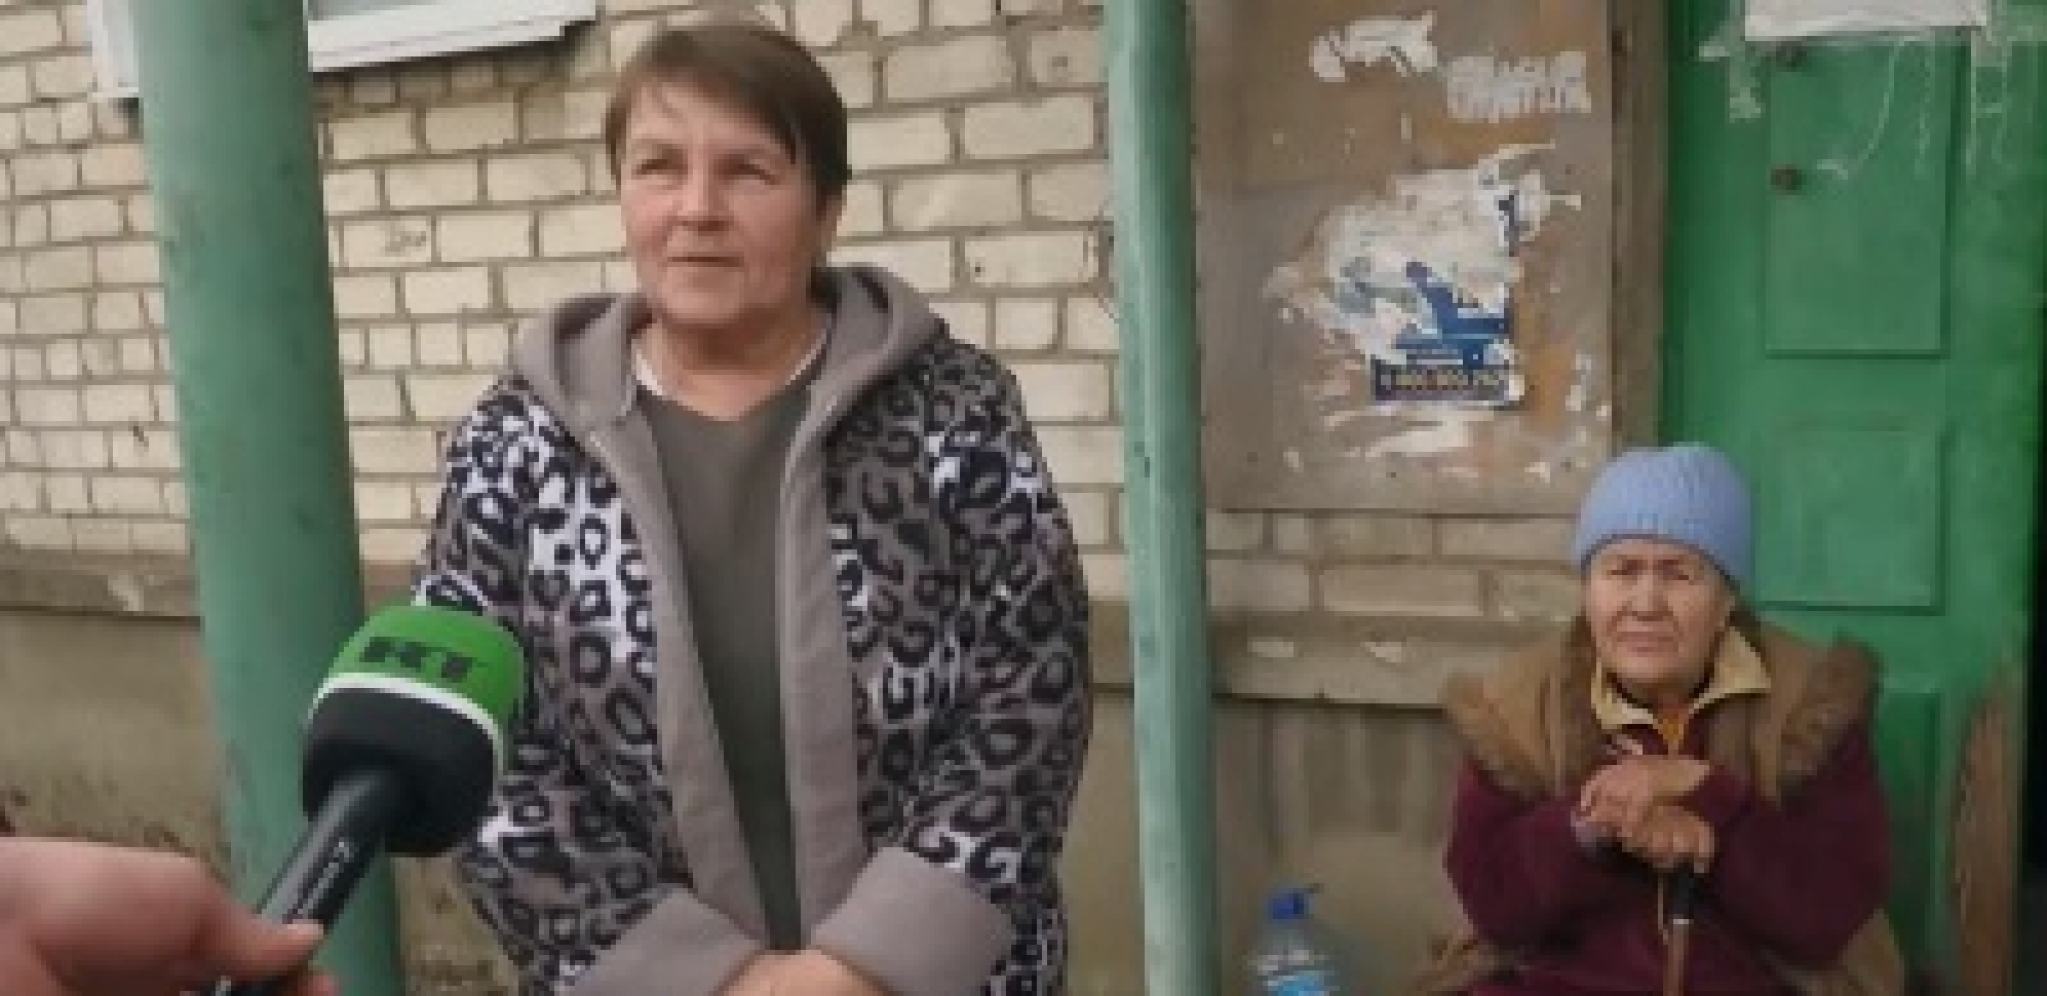 STANOVNICI POPASNE ZAHVALNI Čečenski vođa omogućio humanitarnu pomoć: Bog mu zdravlja dao!